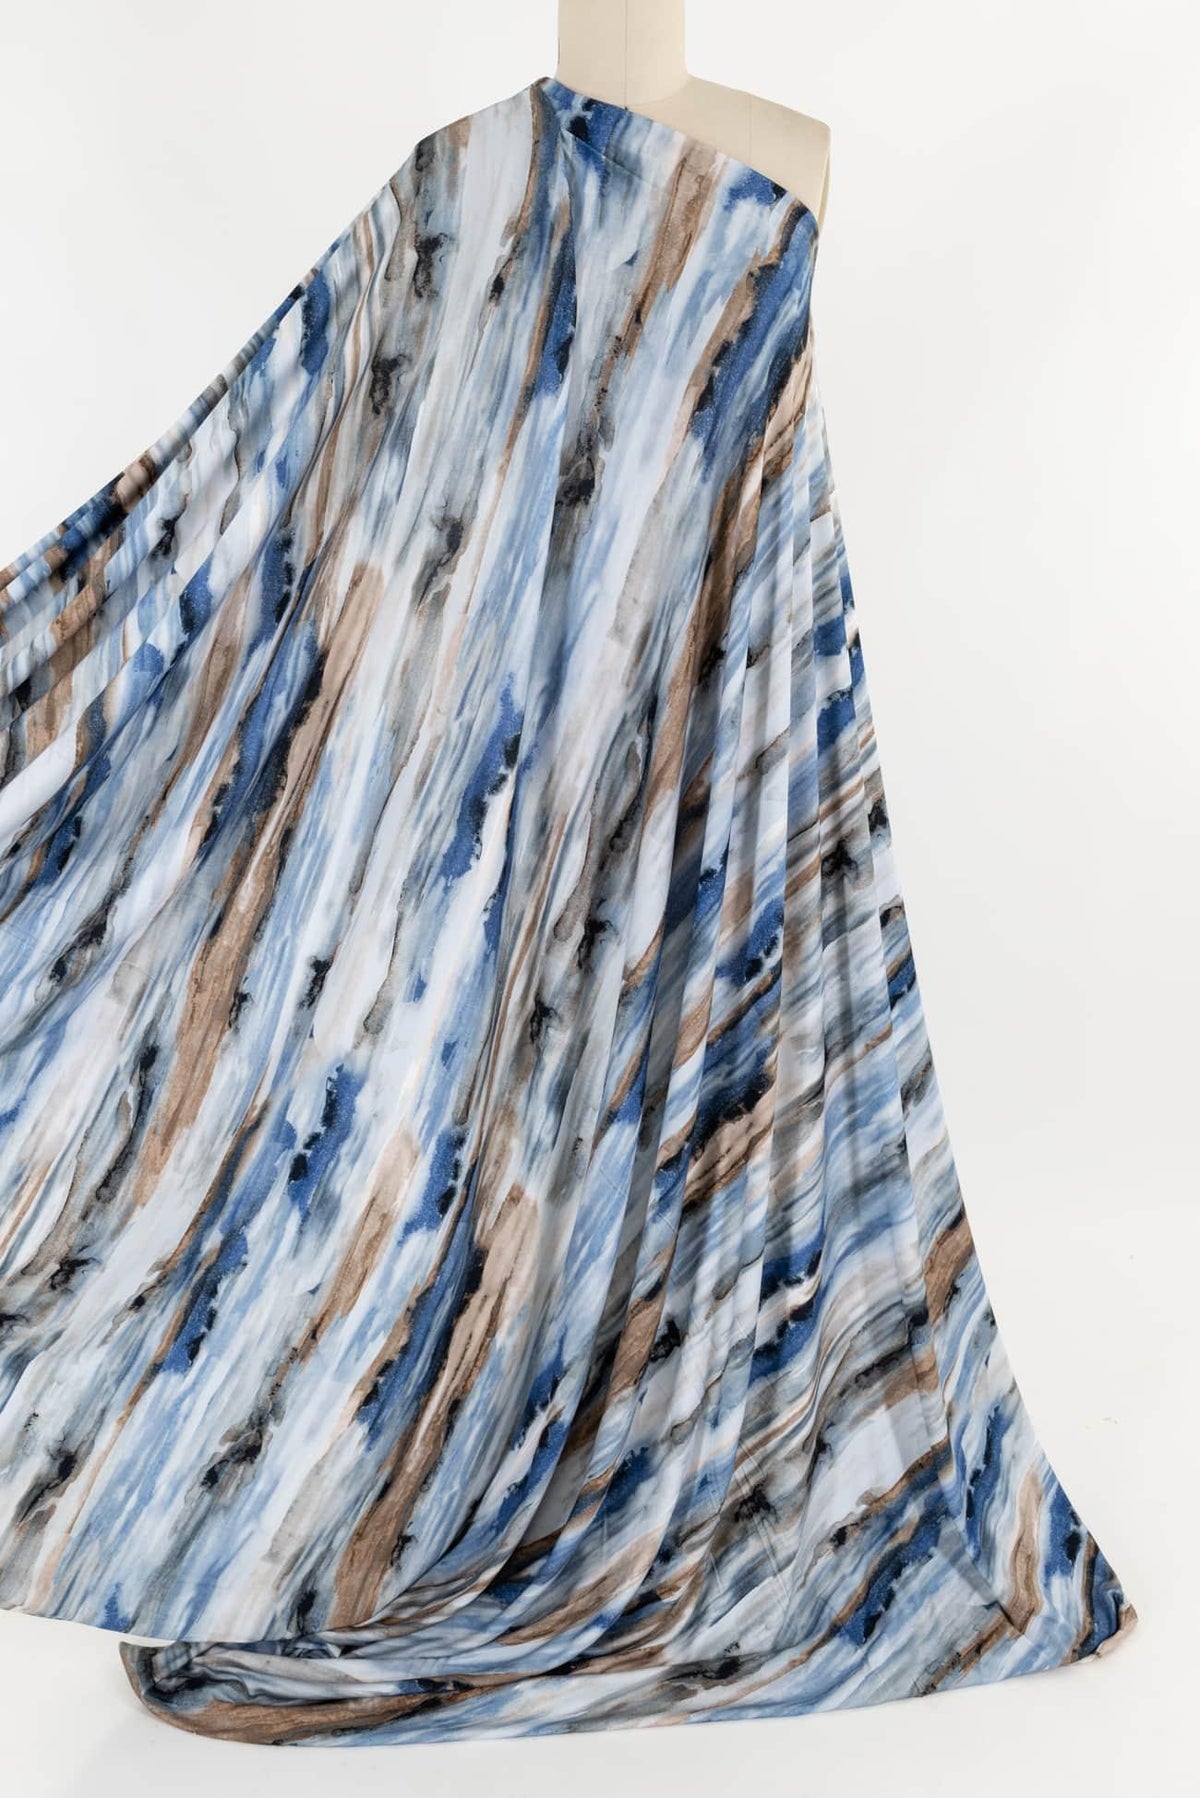 Arabella Viscose Knit - Marcy Tilton Fabrics